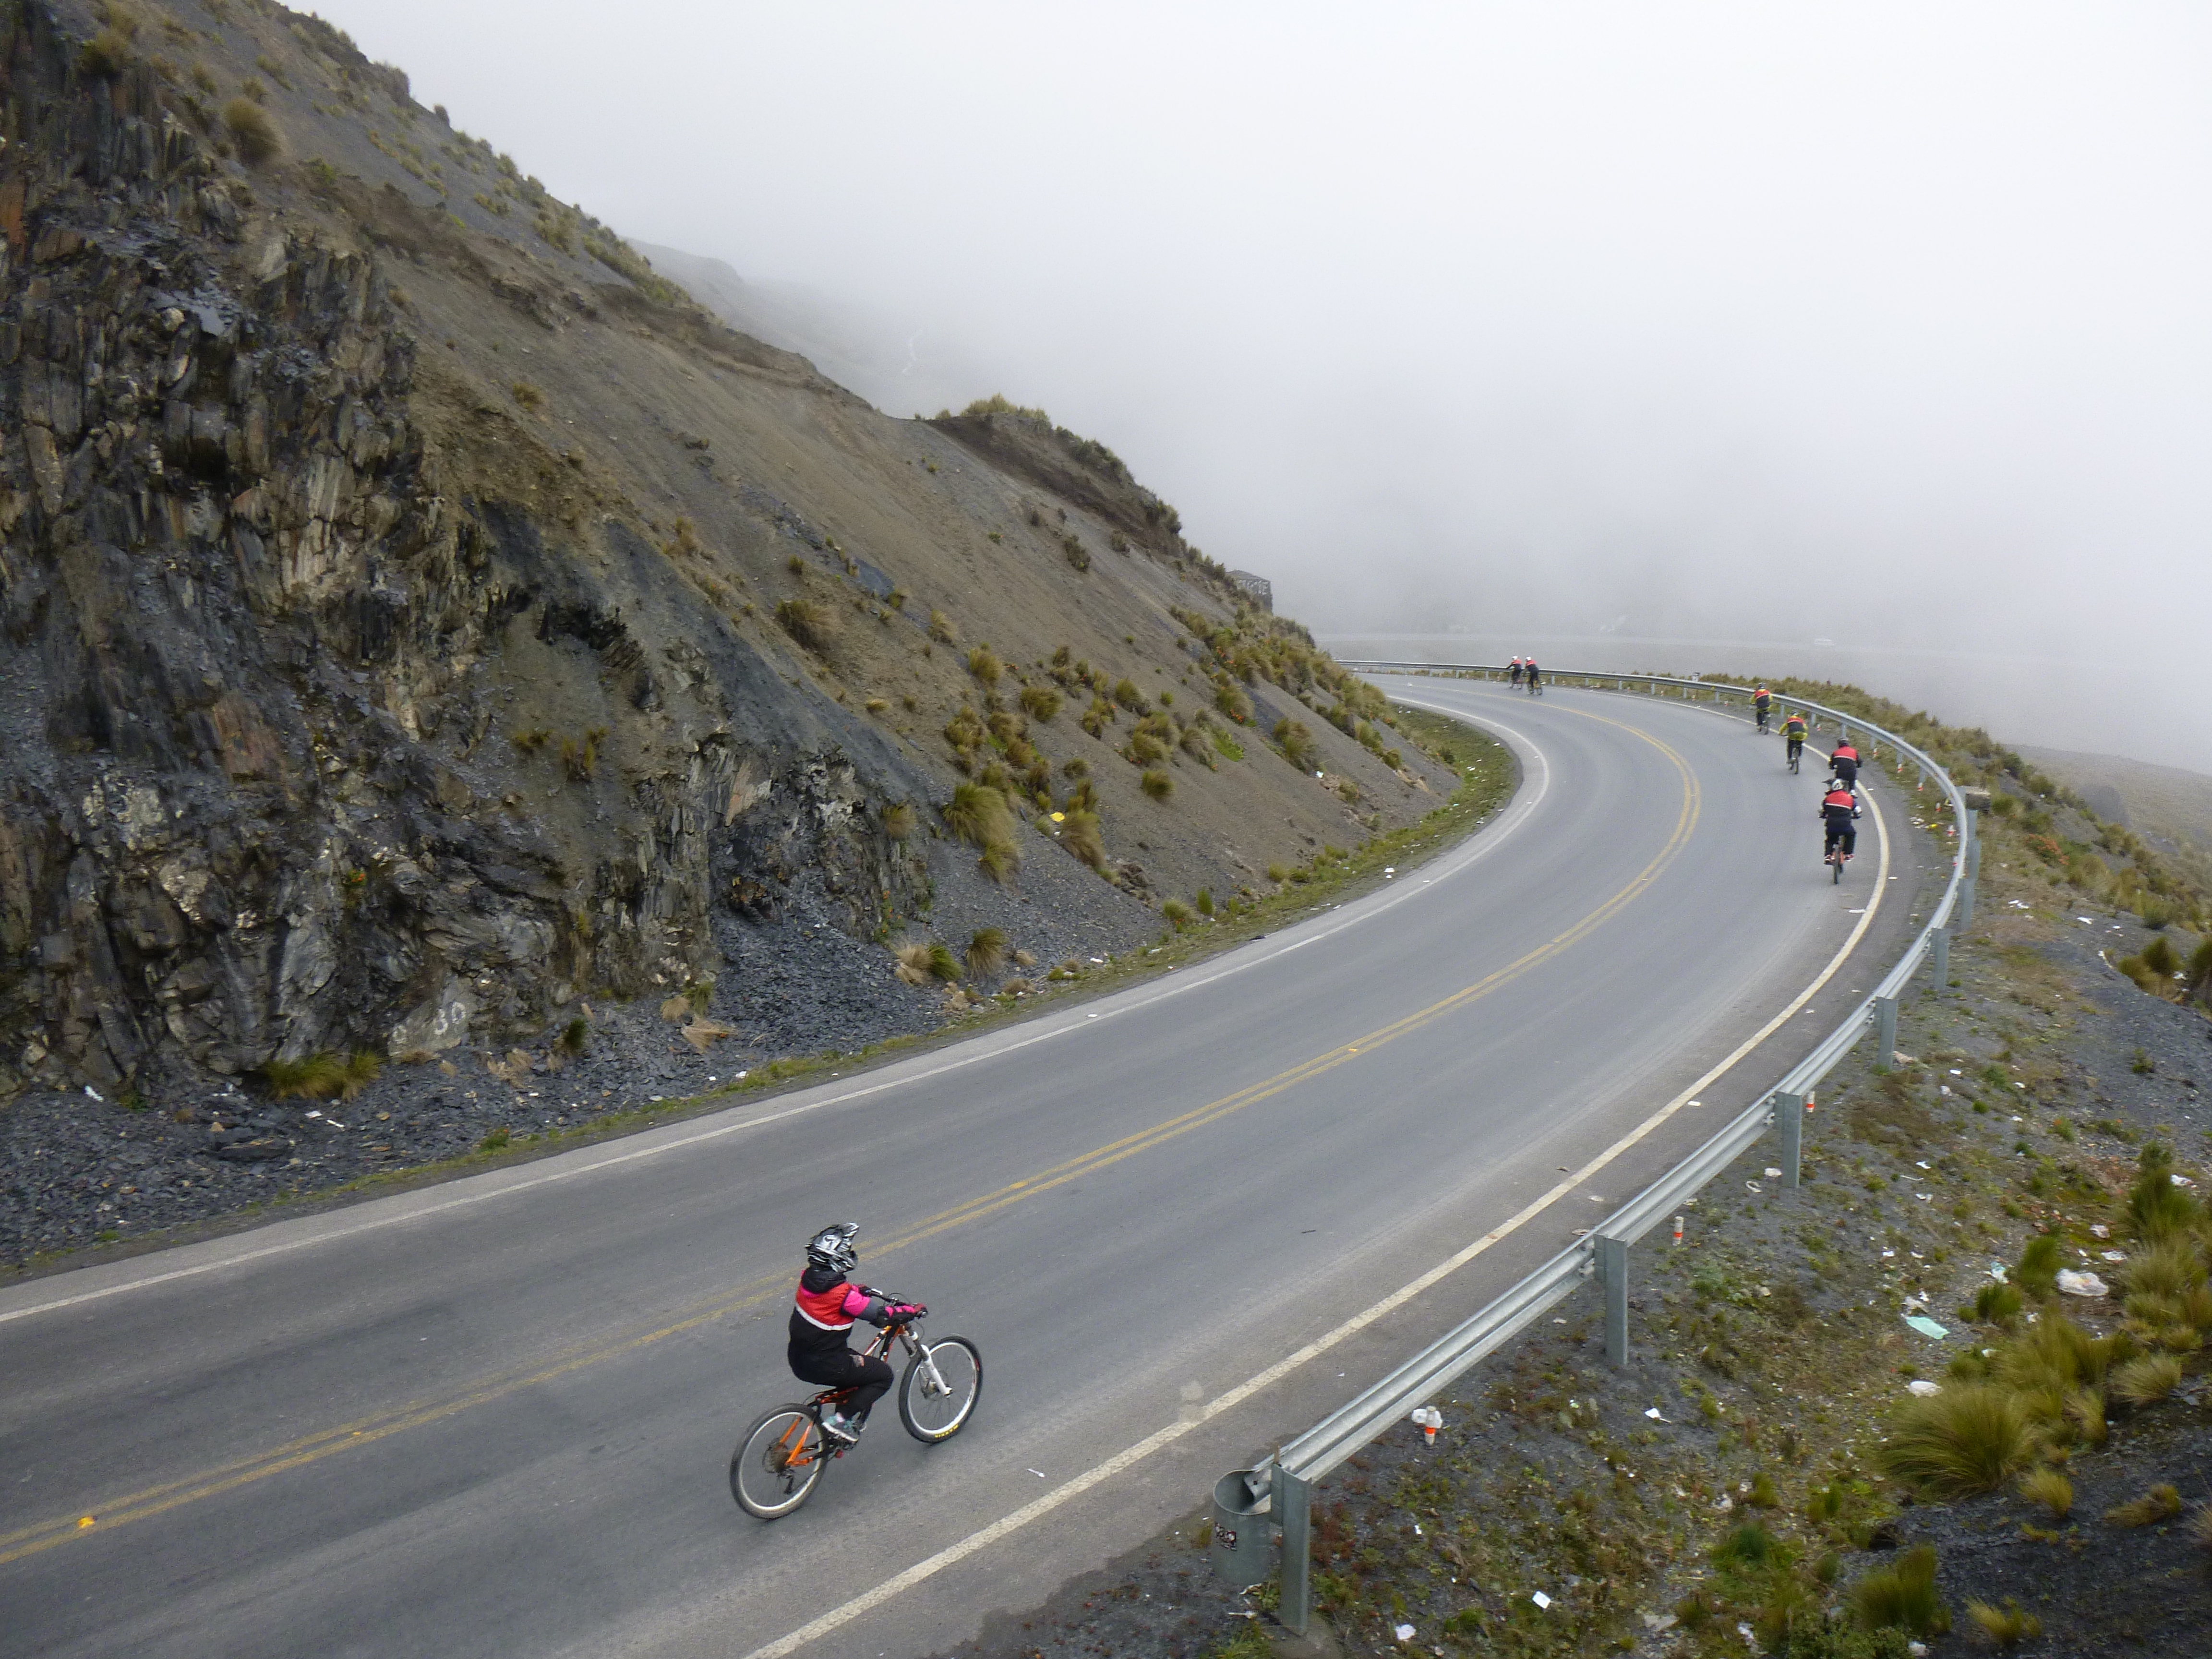 Los turistas recorren la carretera en bicicleta con todo un equipamiento de seguridad. (Foto: Mauricio Frias/Flickr)